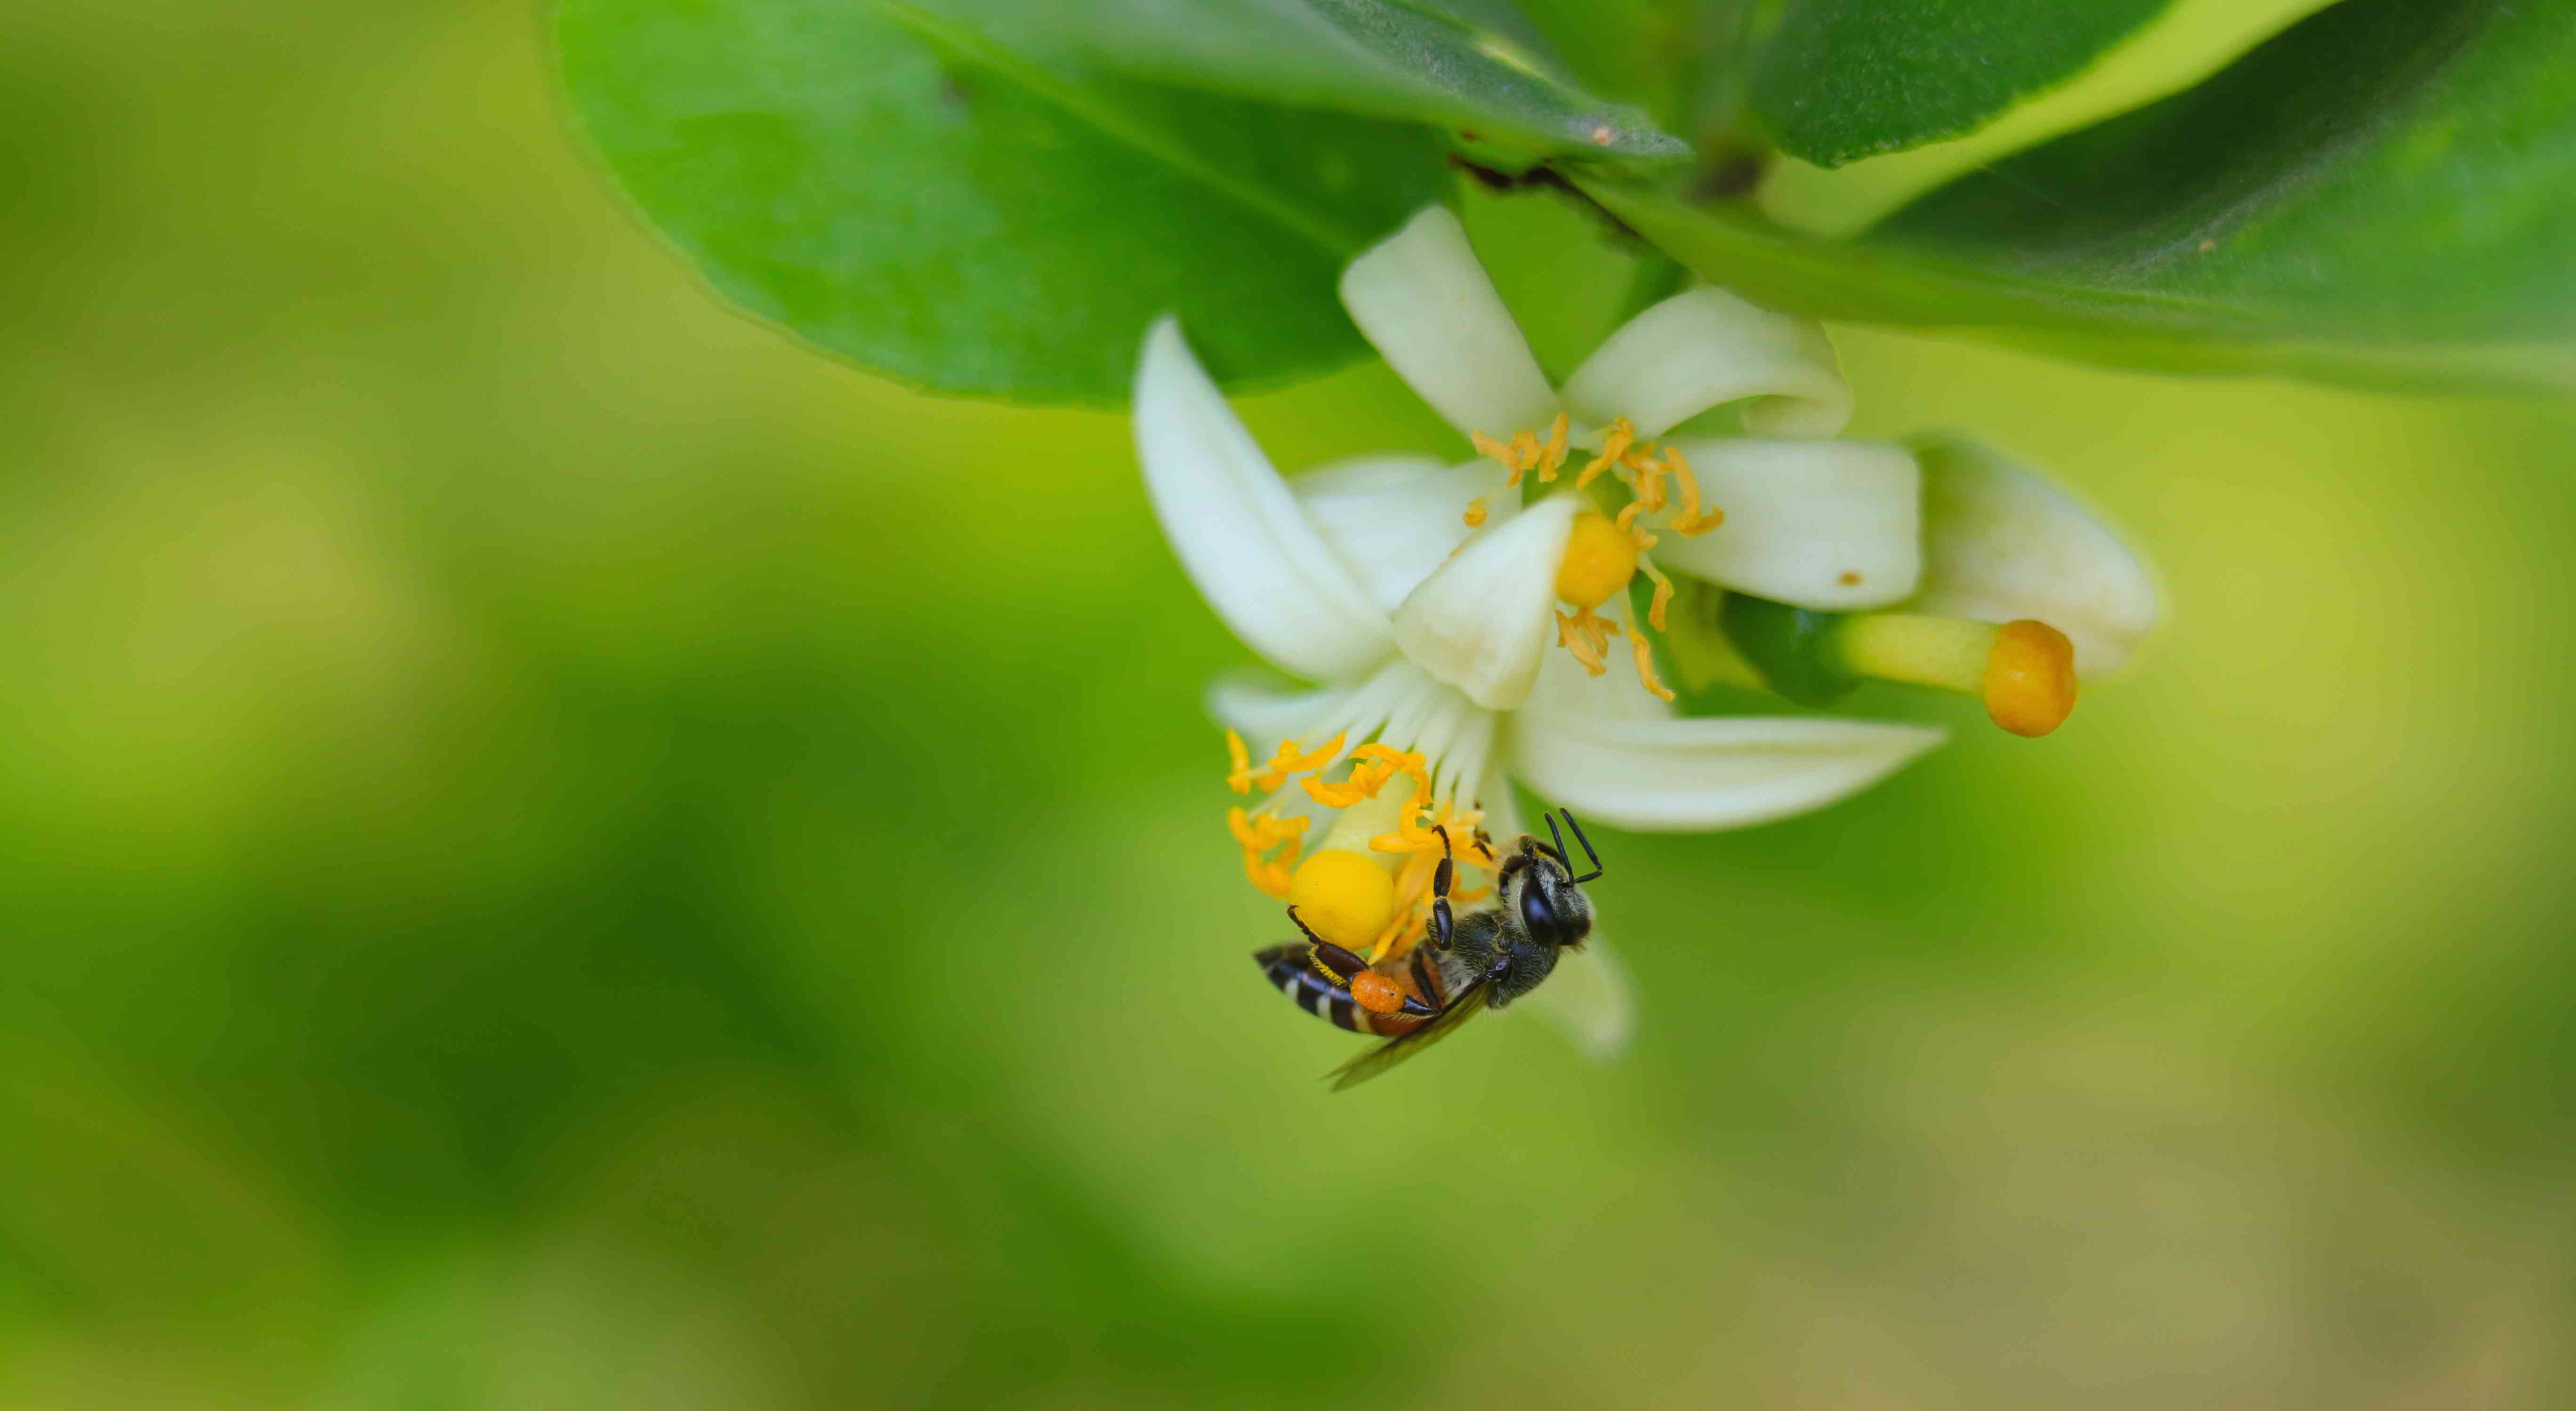 蜜蜂为青柠花授粉